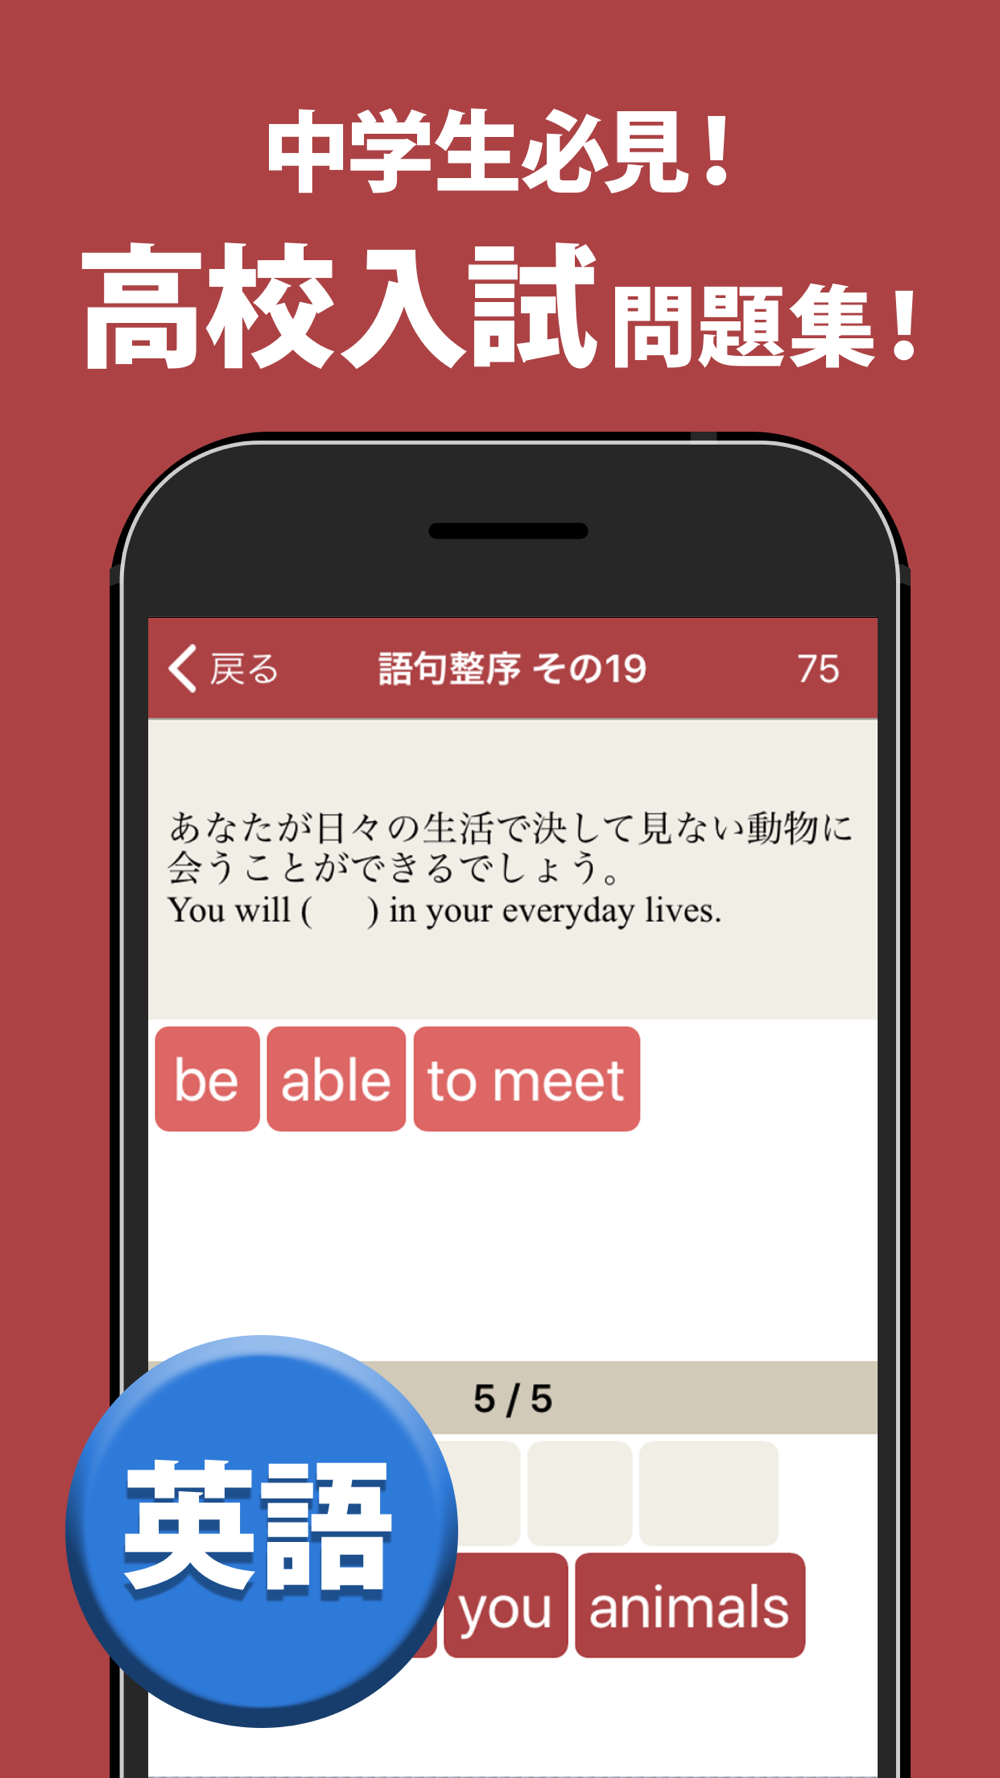 高校入試対策アプリ 中学生向け高校入試問題集 Free Download App For Iphone Steprimo Com